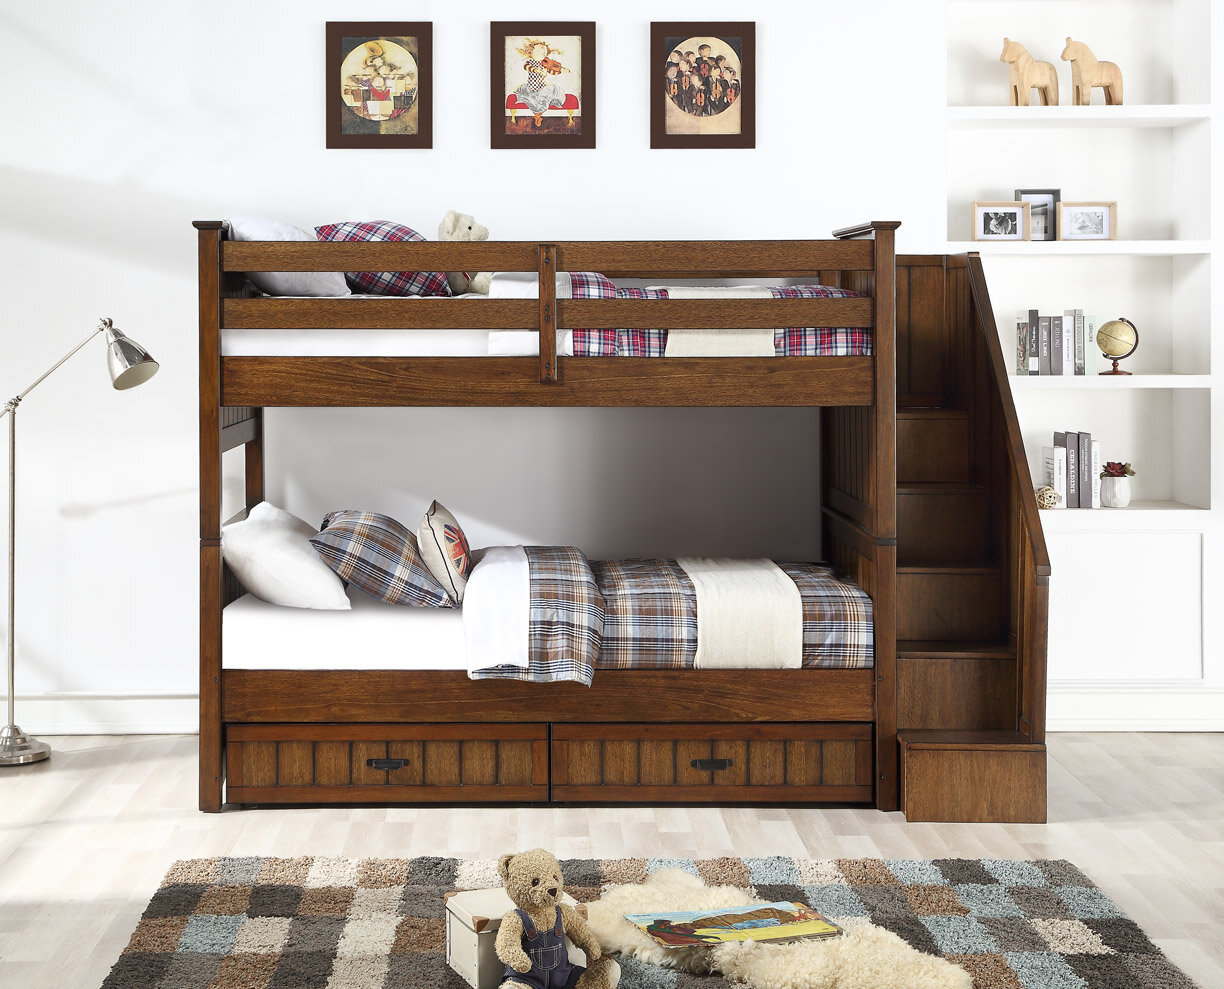 Caramia Furniture Bunk Beds, Convertible Twin Bunk Beds